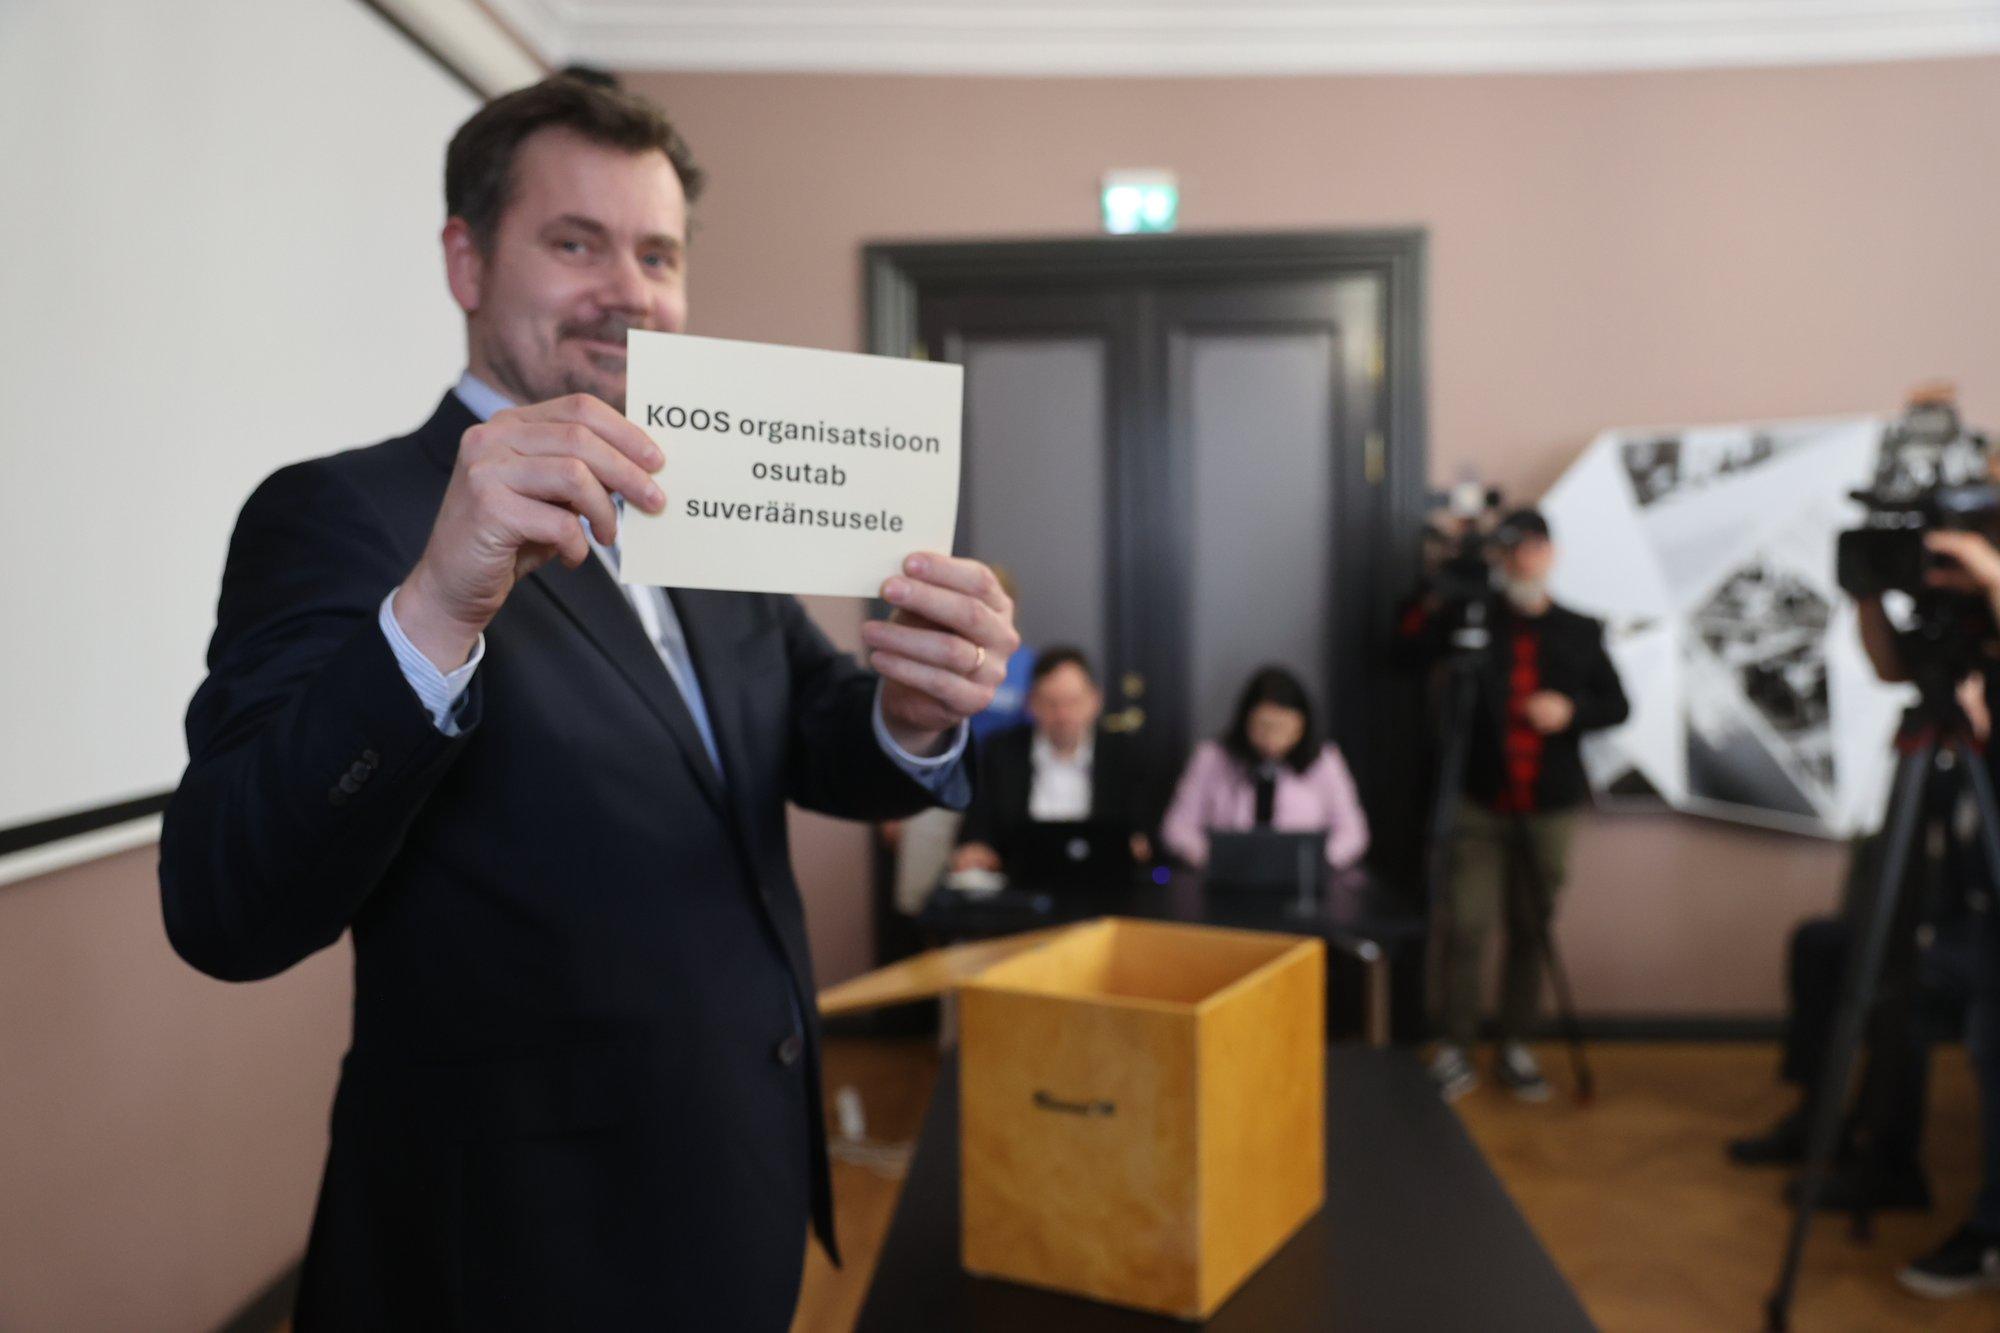 ФОТО | Жребий брошен! Первой в списке на выборах в Европарламент будет партия KOOS во главе с Айво Петерсоном 